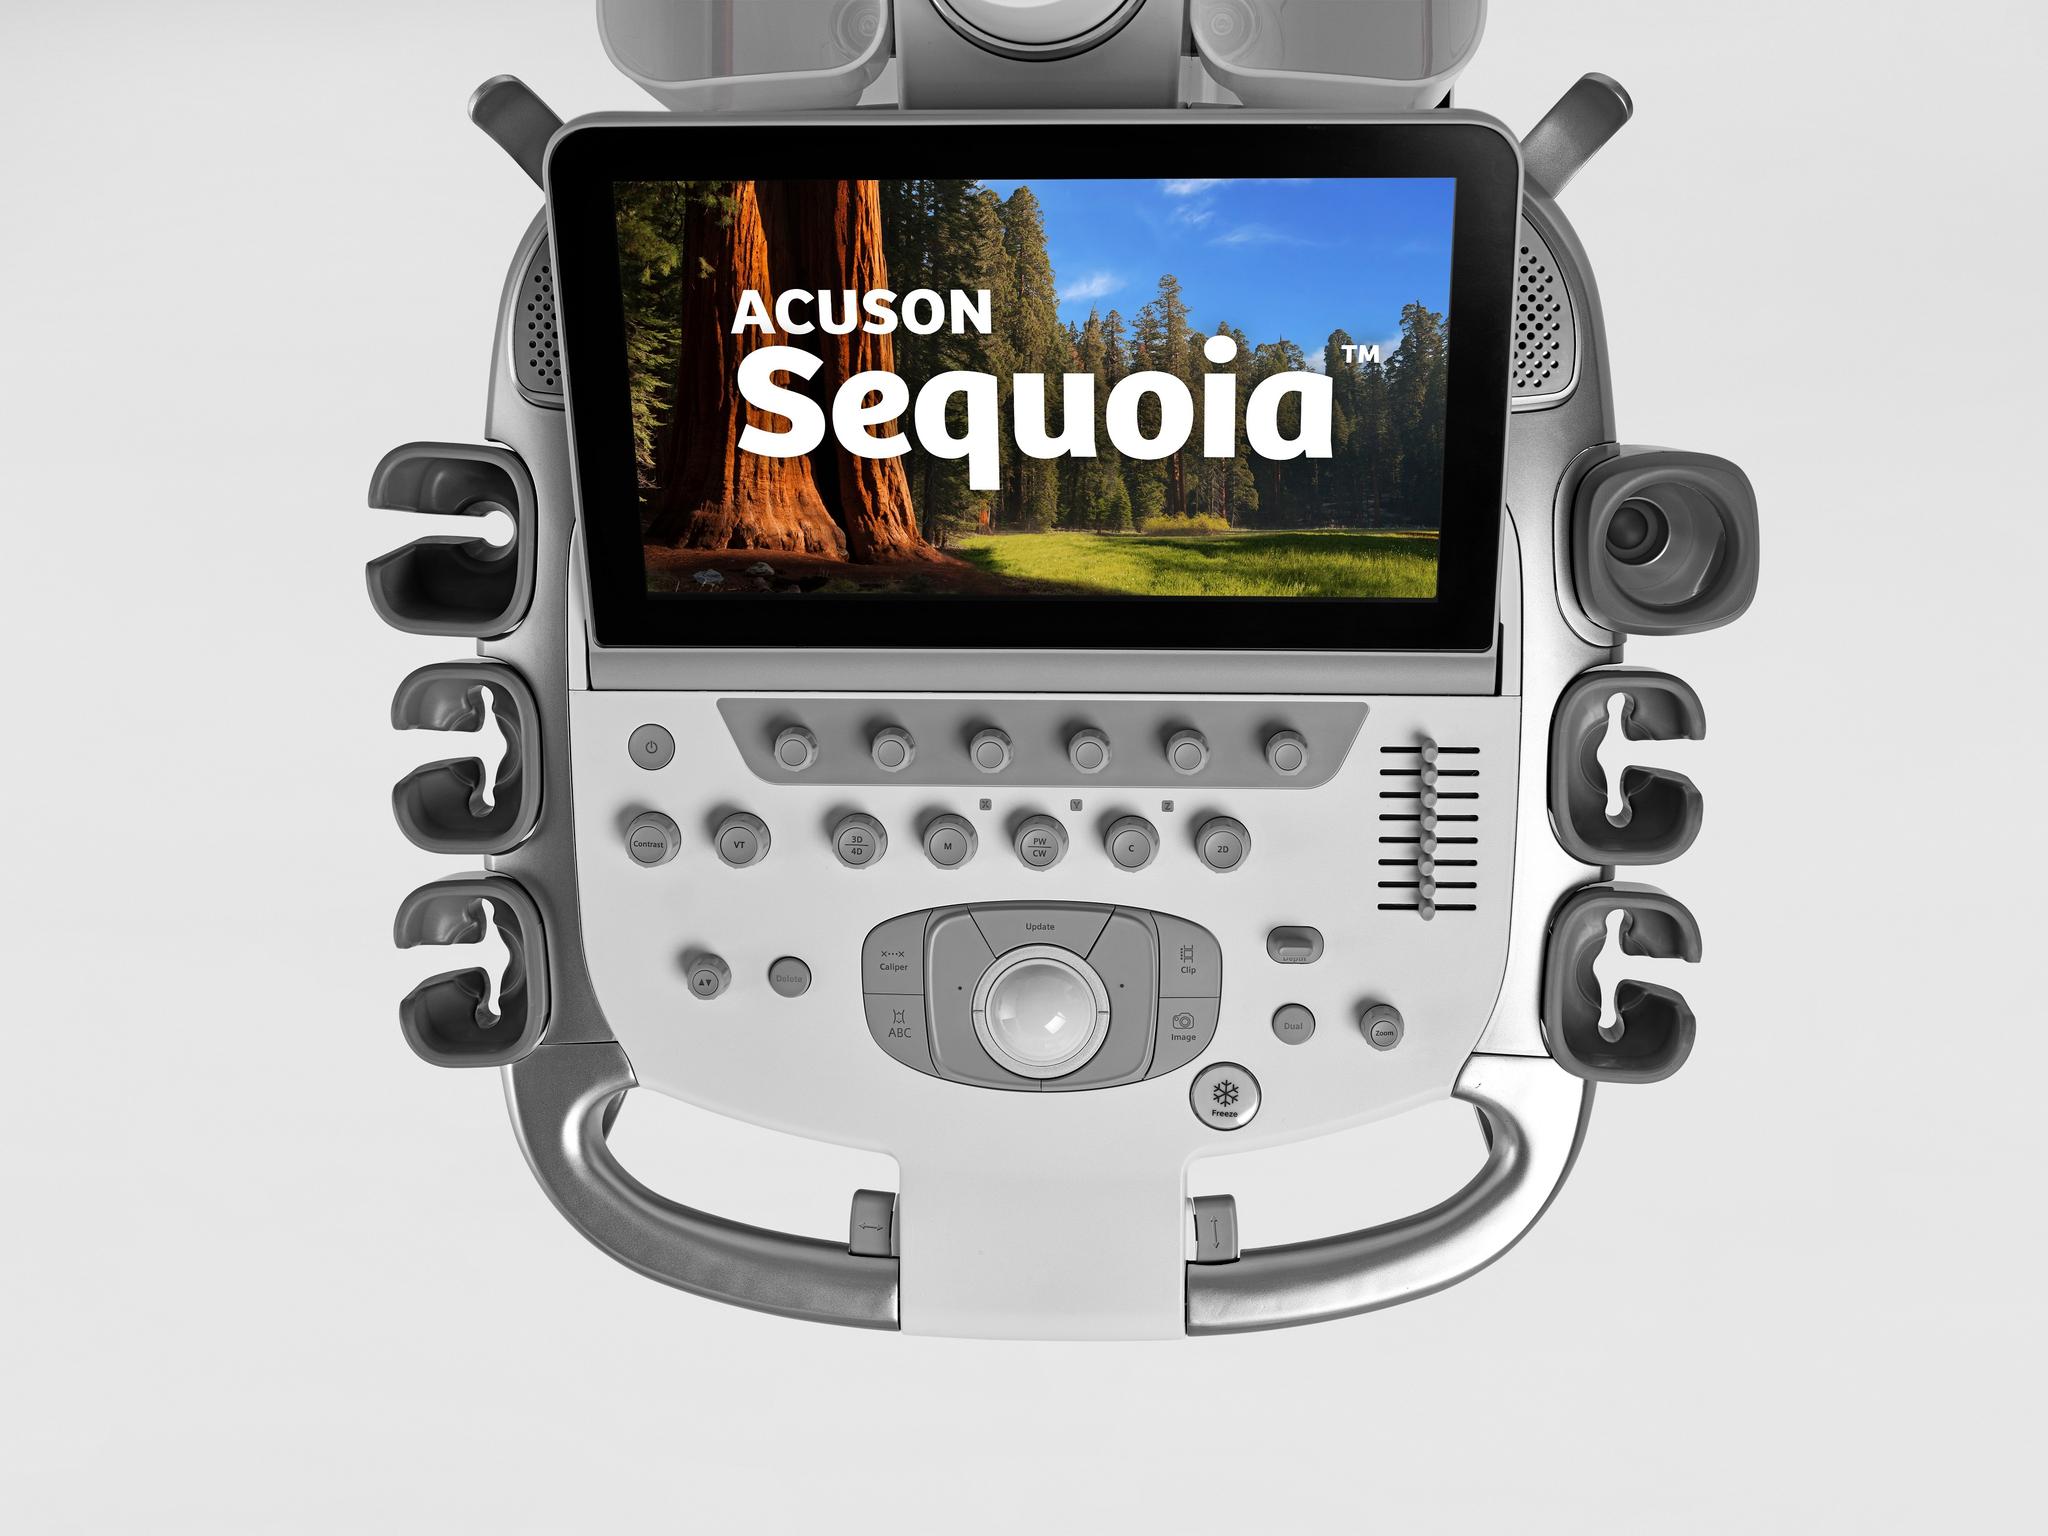 Siemens Acuson Sequoia ultrasound machine